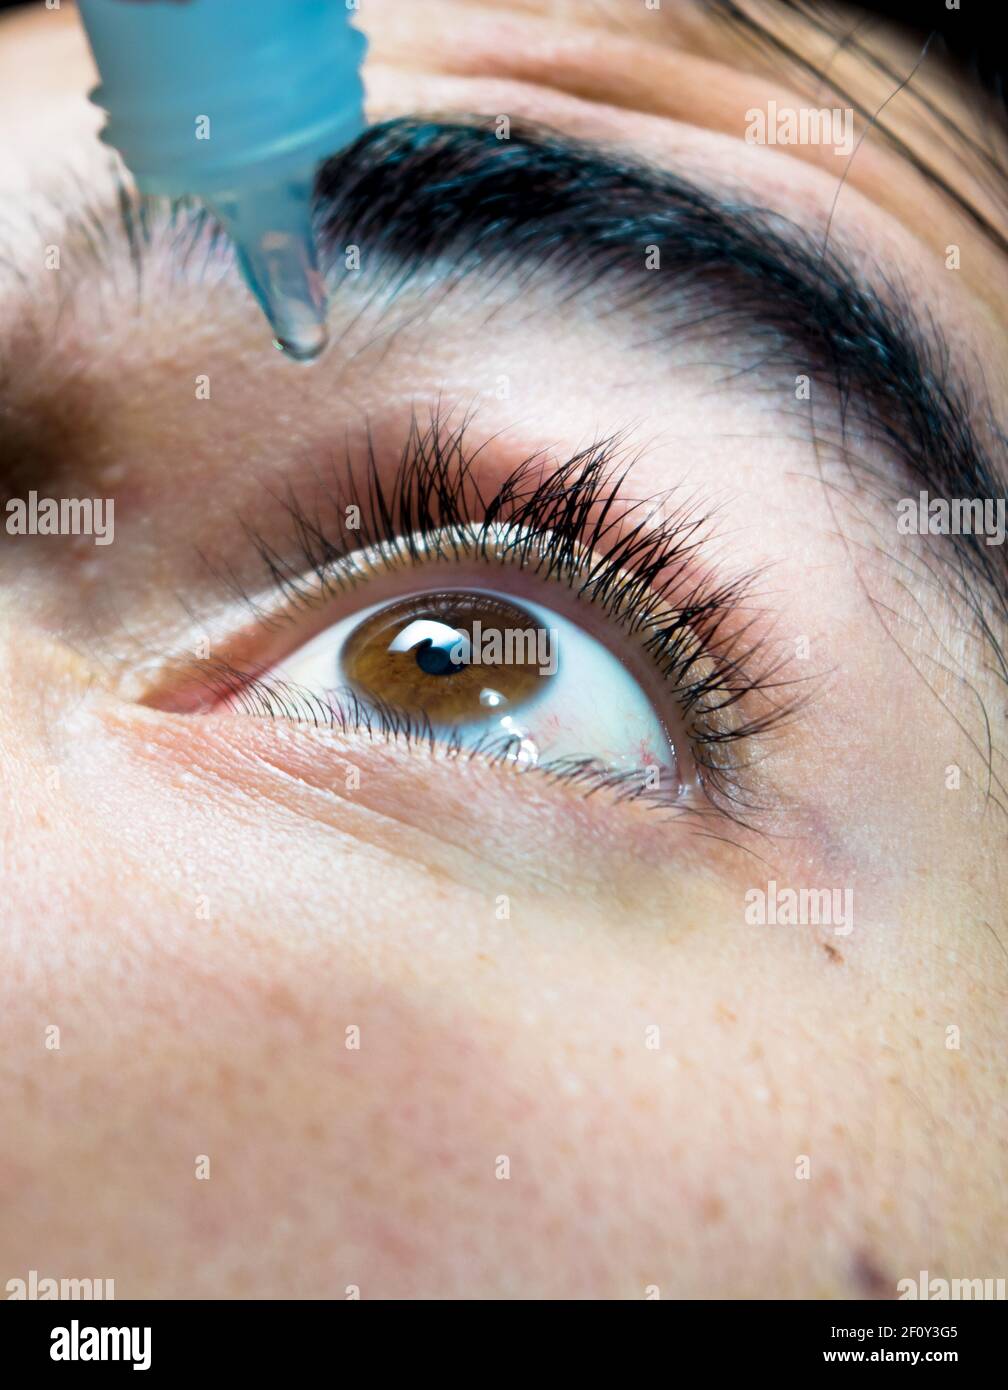 Detailfotografie eines kaukasischen Mannes, der Augentropfen in seine  braunen Augen einsetzte. Makro der Pupille und Wimpern. Gesundheitswesen  und Augenheilkunde Stockfotografie - Alamy